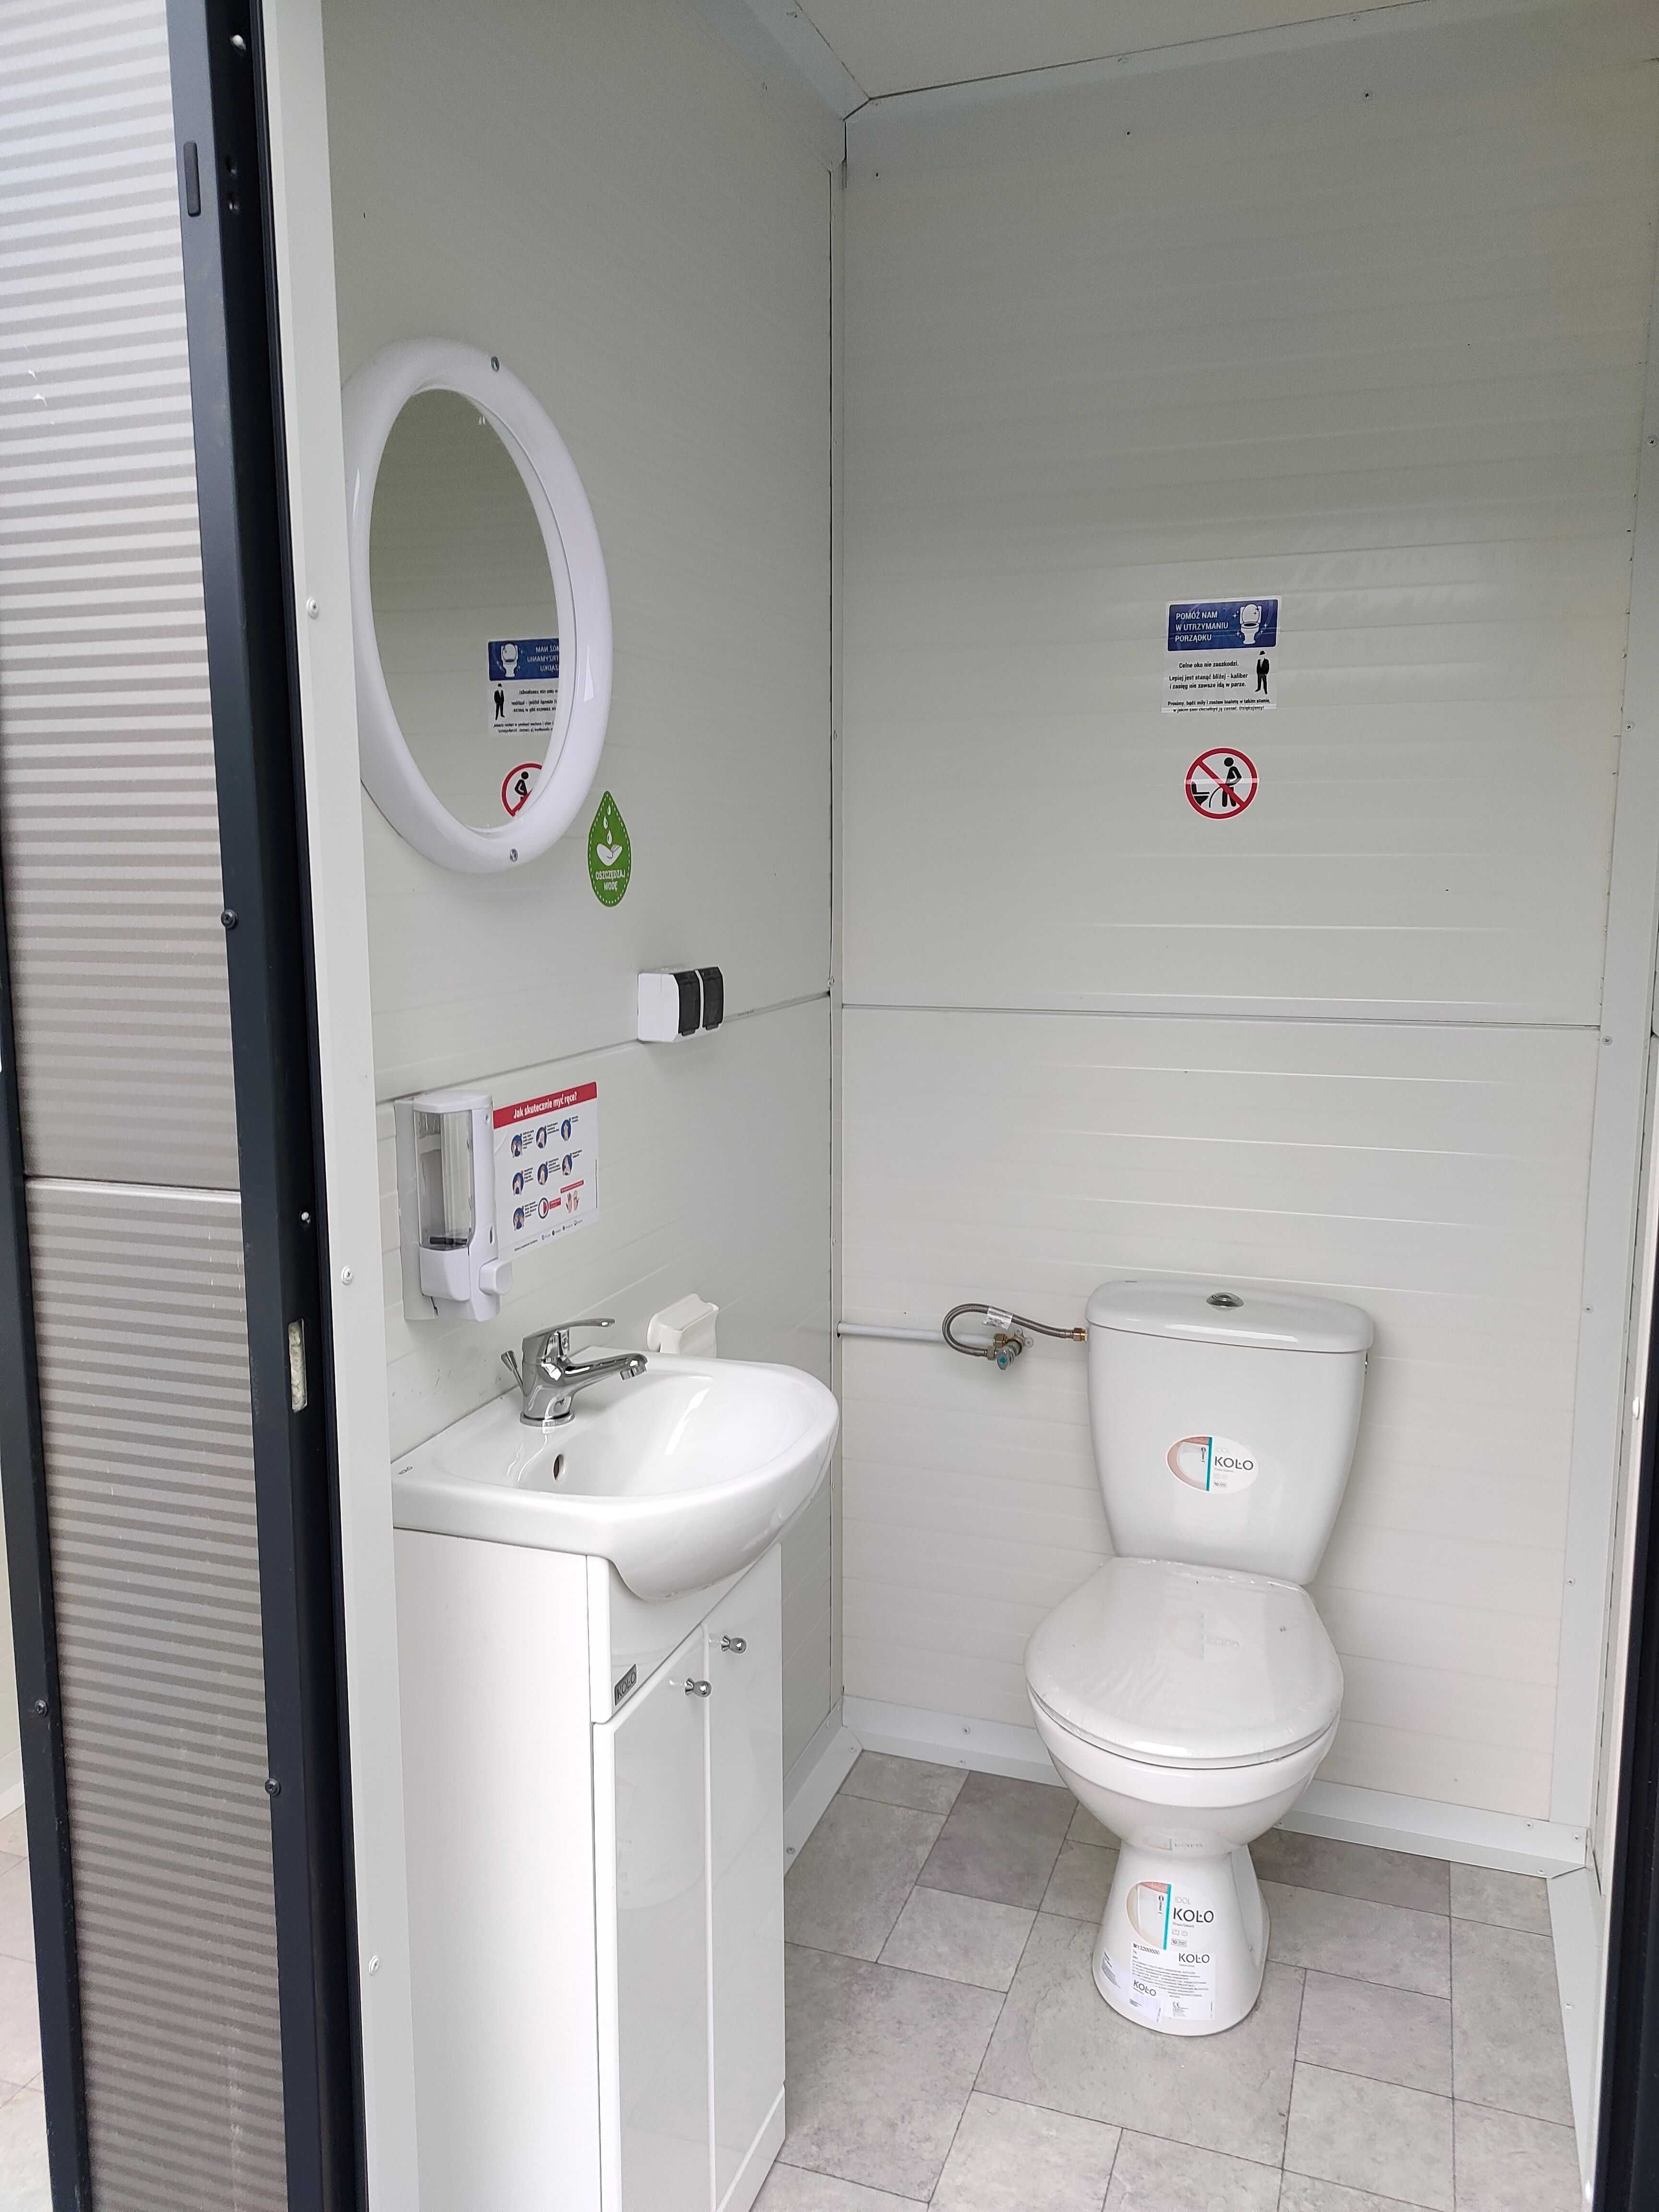 Pawilon WC kontener socjalny sanitarny kibel usługowy toaleta budka